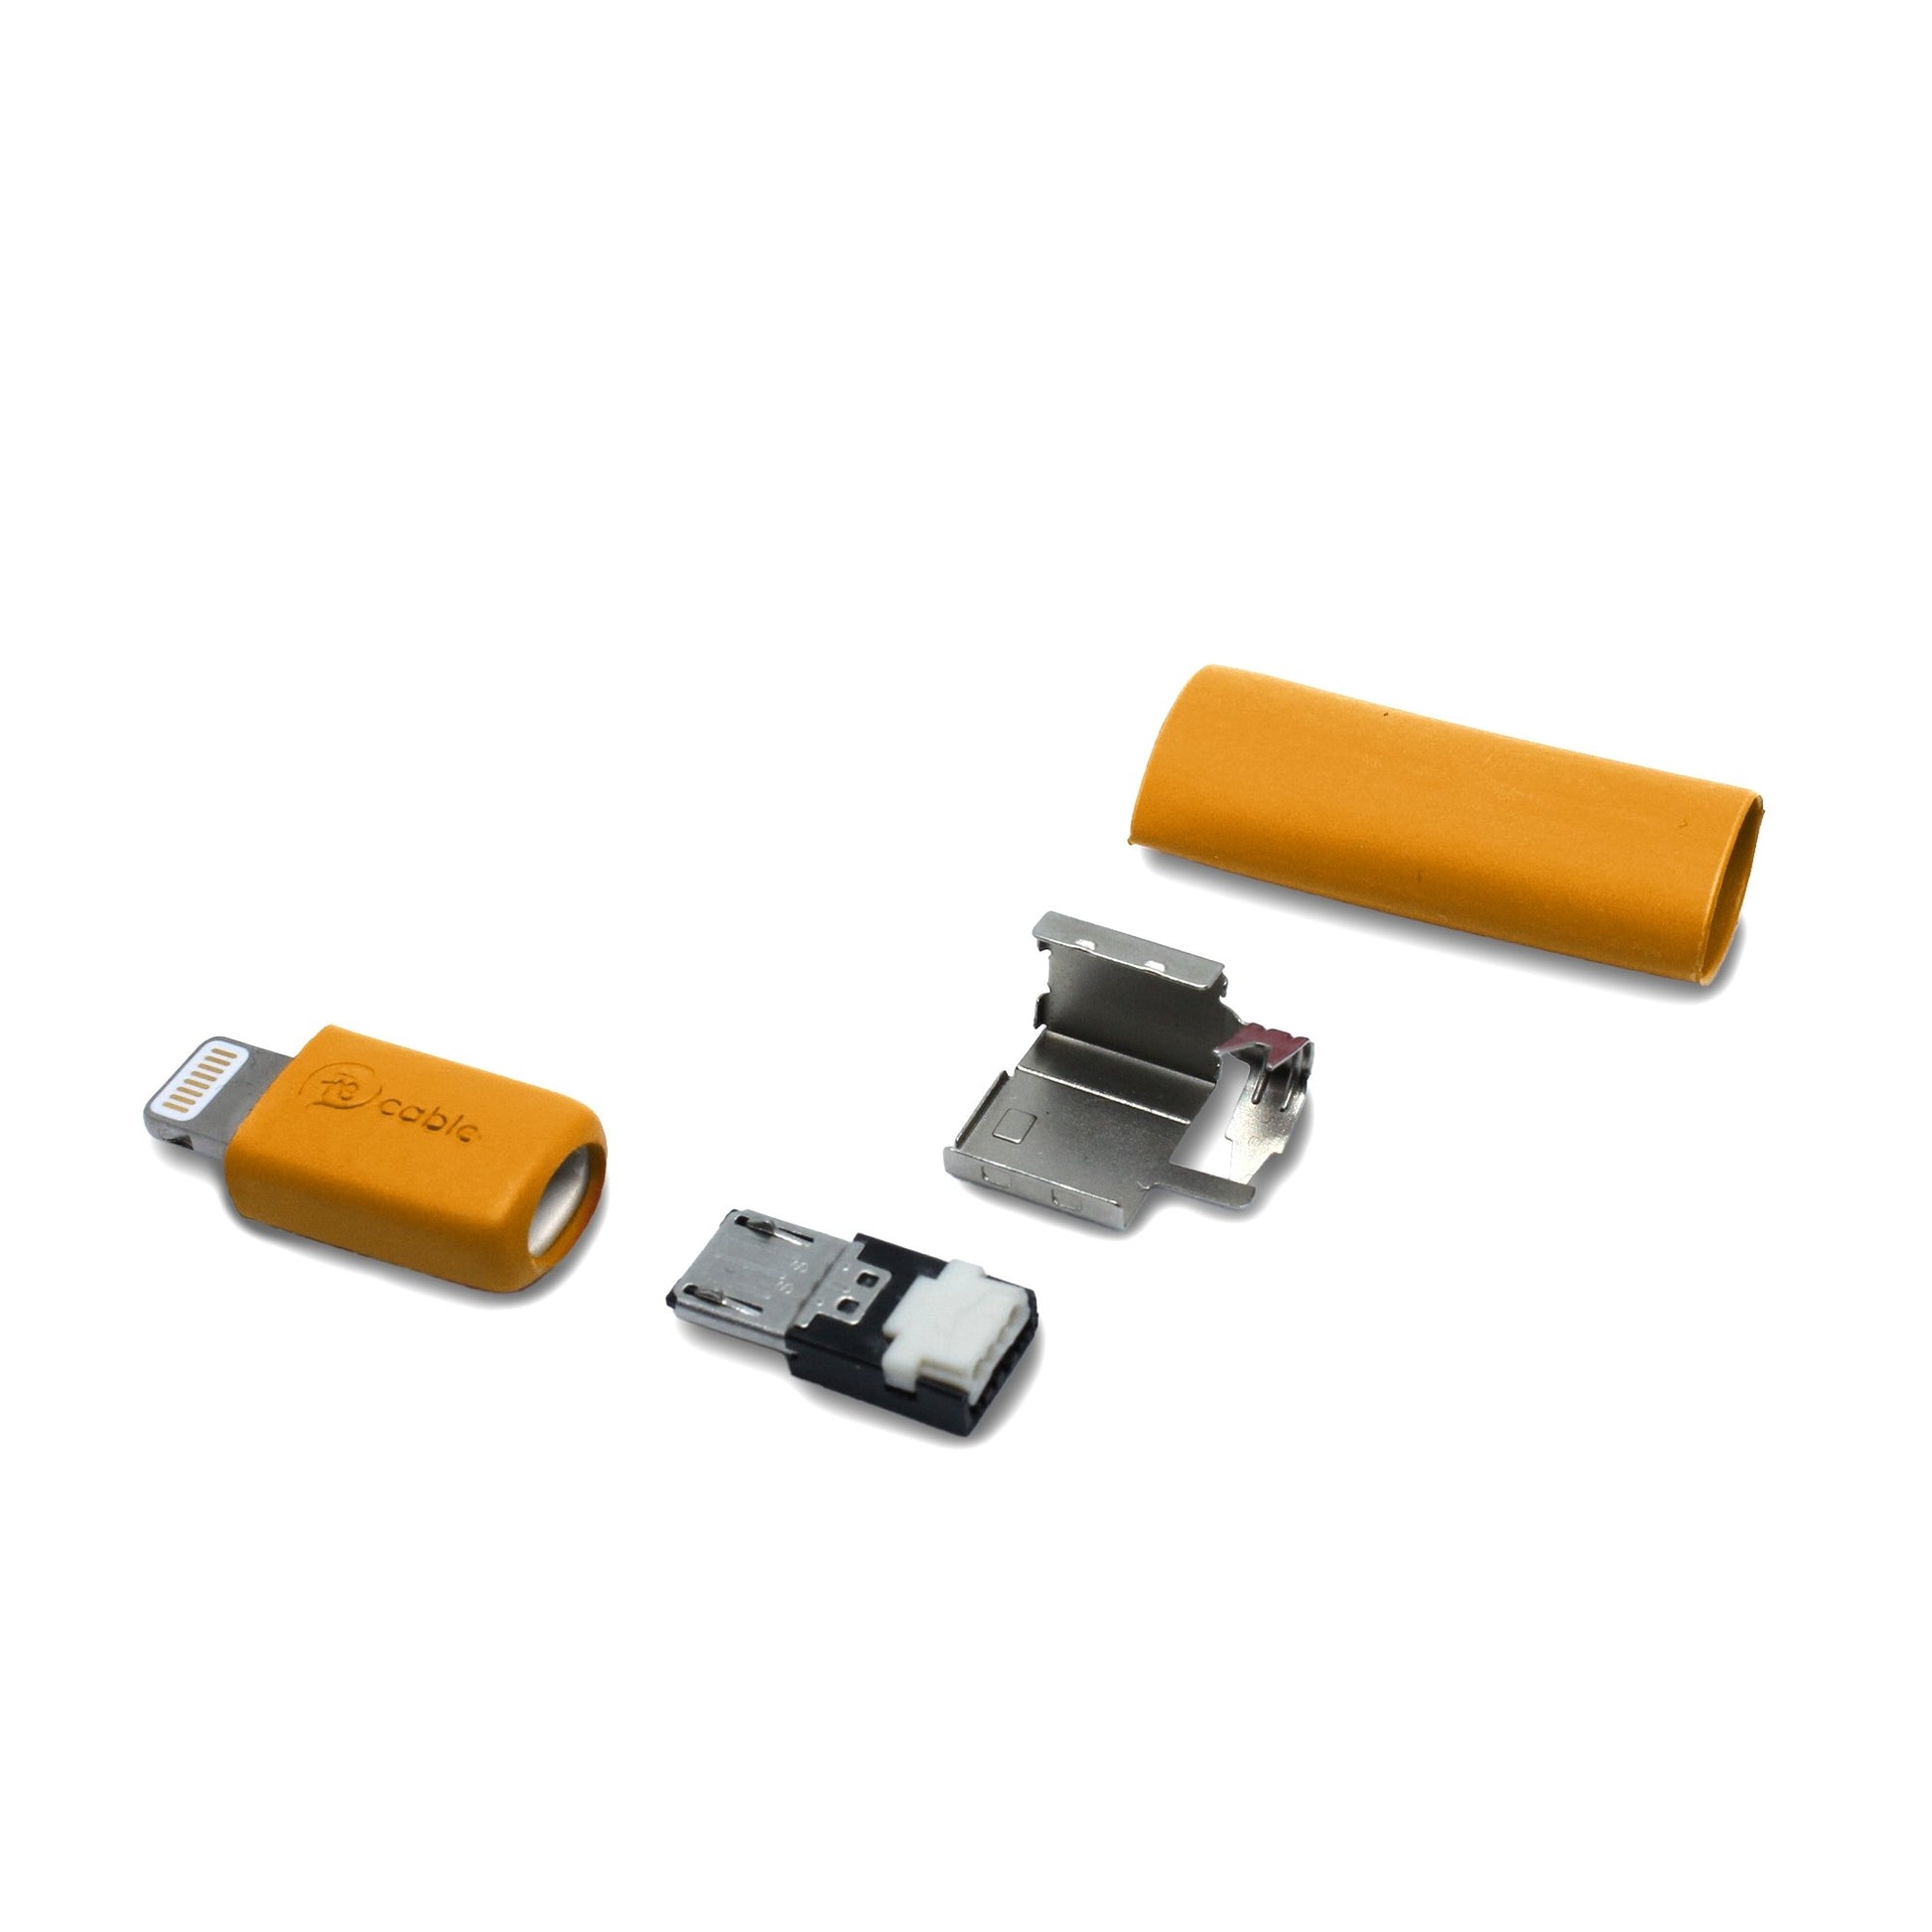 Micro USB Stecker Einzelteile mit Lightning (iPhone) Adapter in orange, mit dem Ersatzteil kann ein iPhone Kabel lötfrei (crimpen) repariert werden